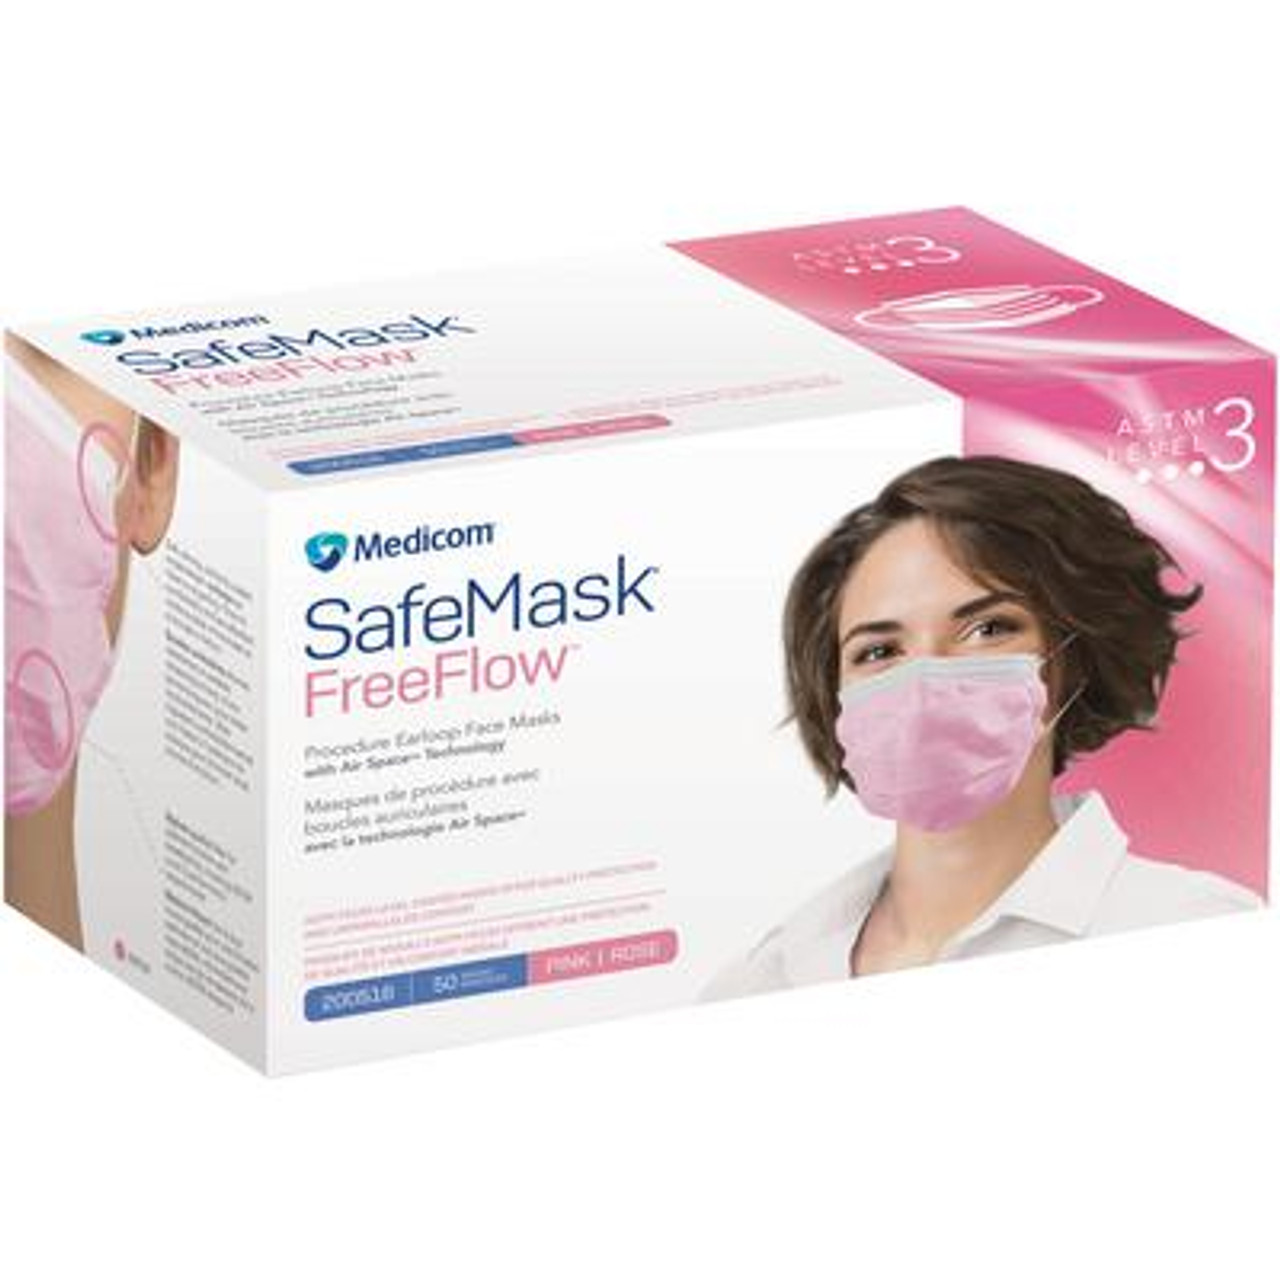 Medicom SafeMask FreeFlow Earloop Mask, Level 3 Pink, 50/bx 200516